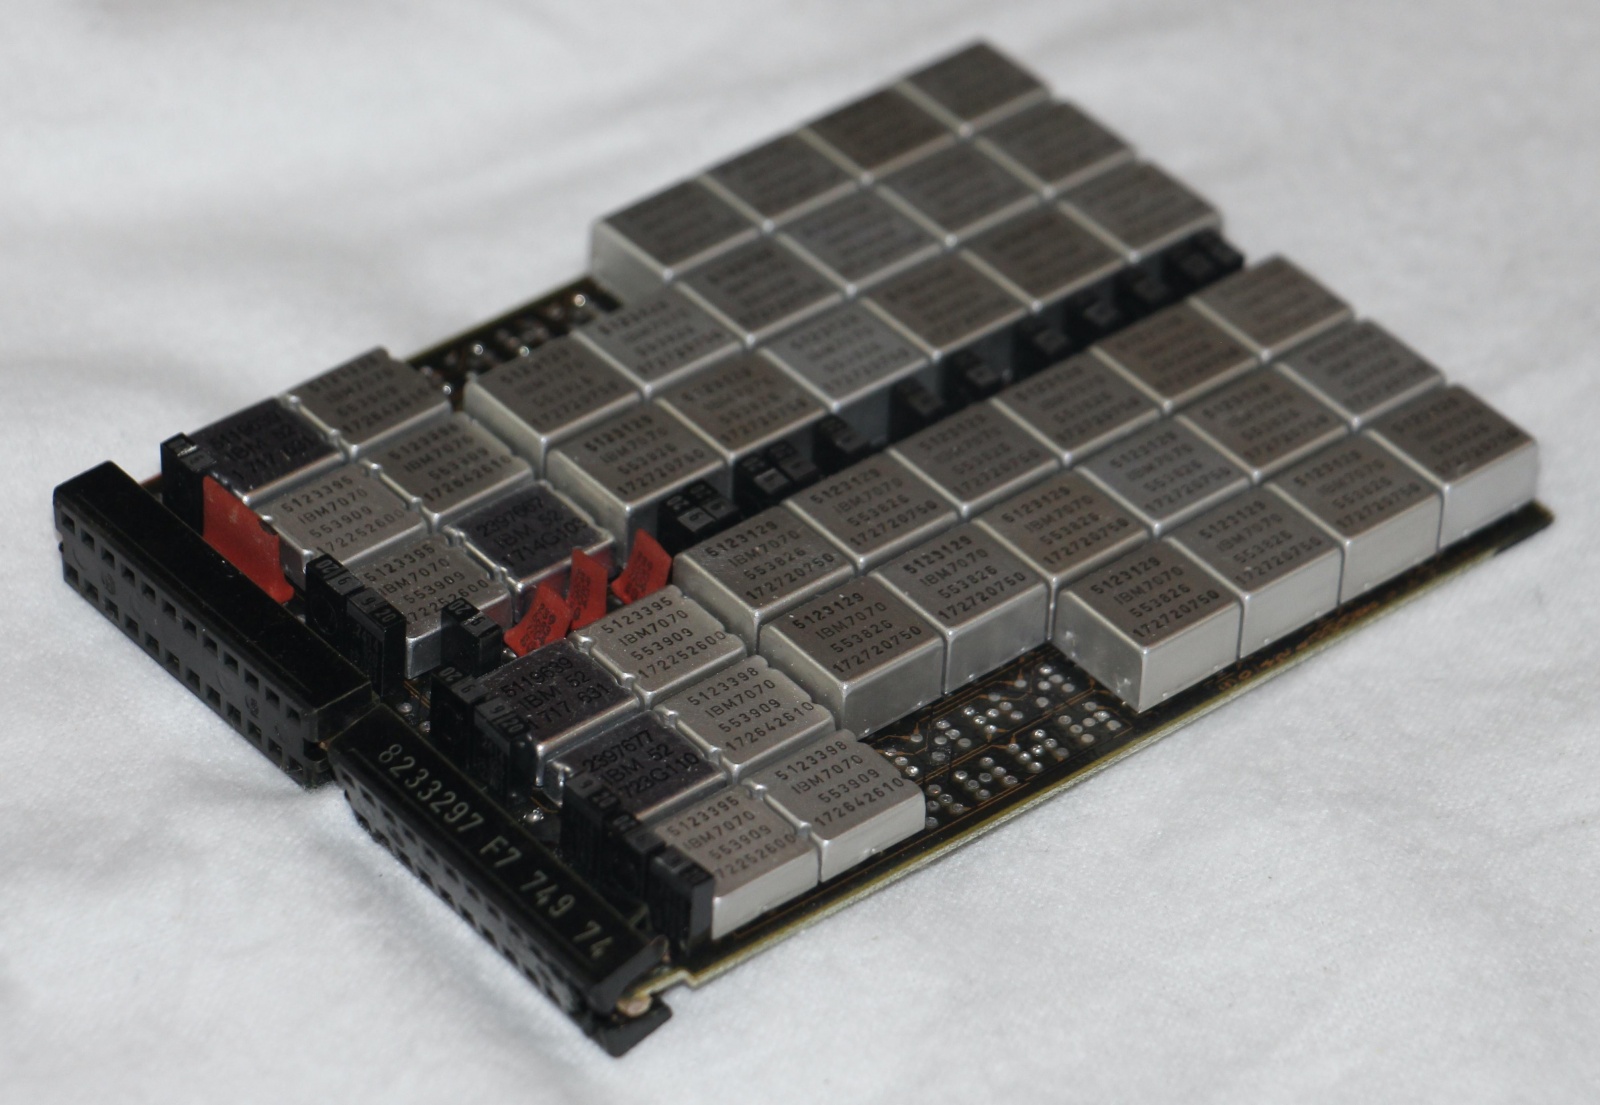 Разбираем пресс-папье от IBM: реверс-инжиниринг чипов памяти из 1970-х - 7